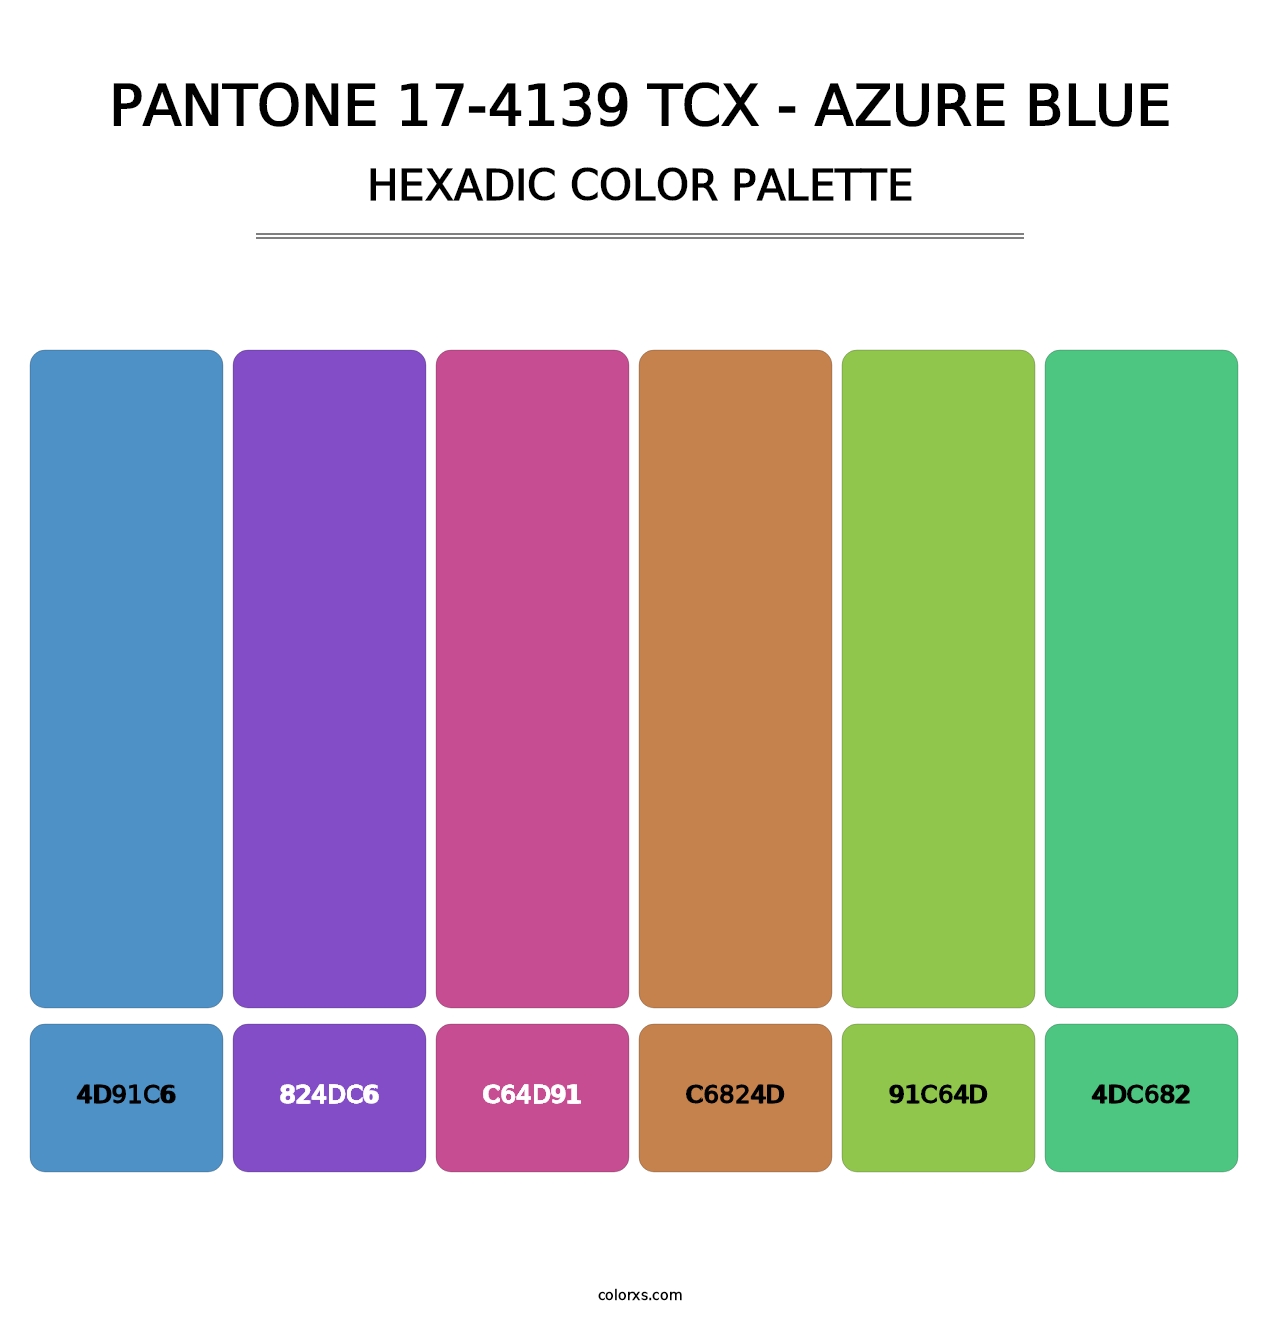 PANTONE 17-4139 TCX - Azure Blue - Hexadic Color Palette